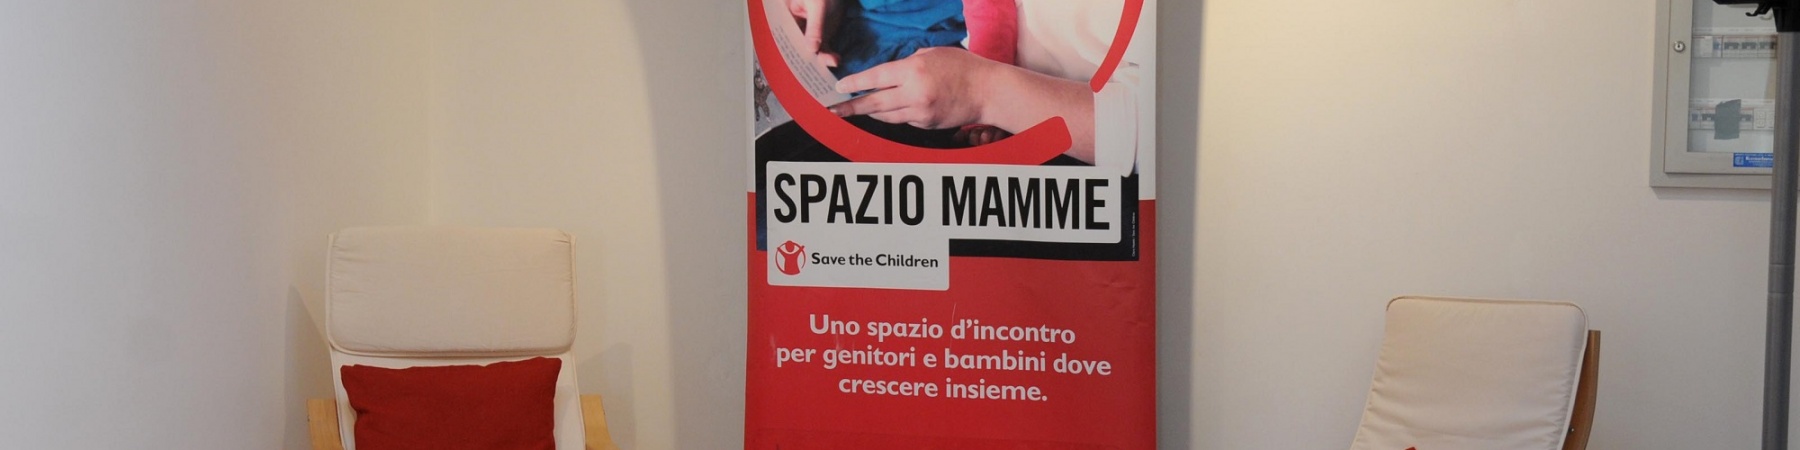 Spazio Mamme